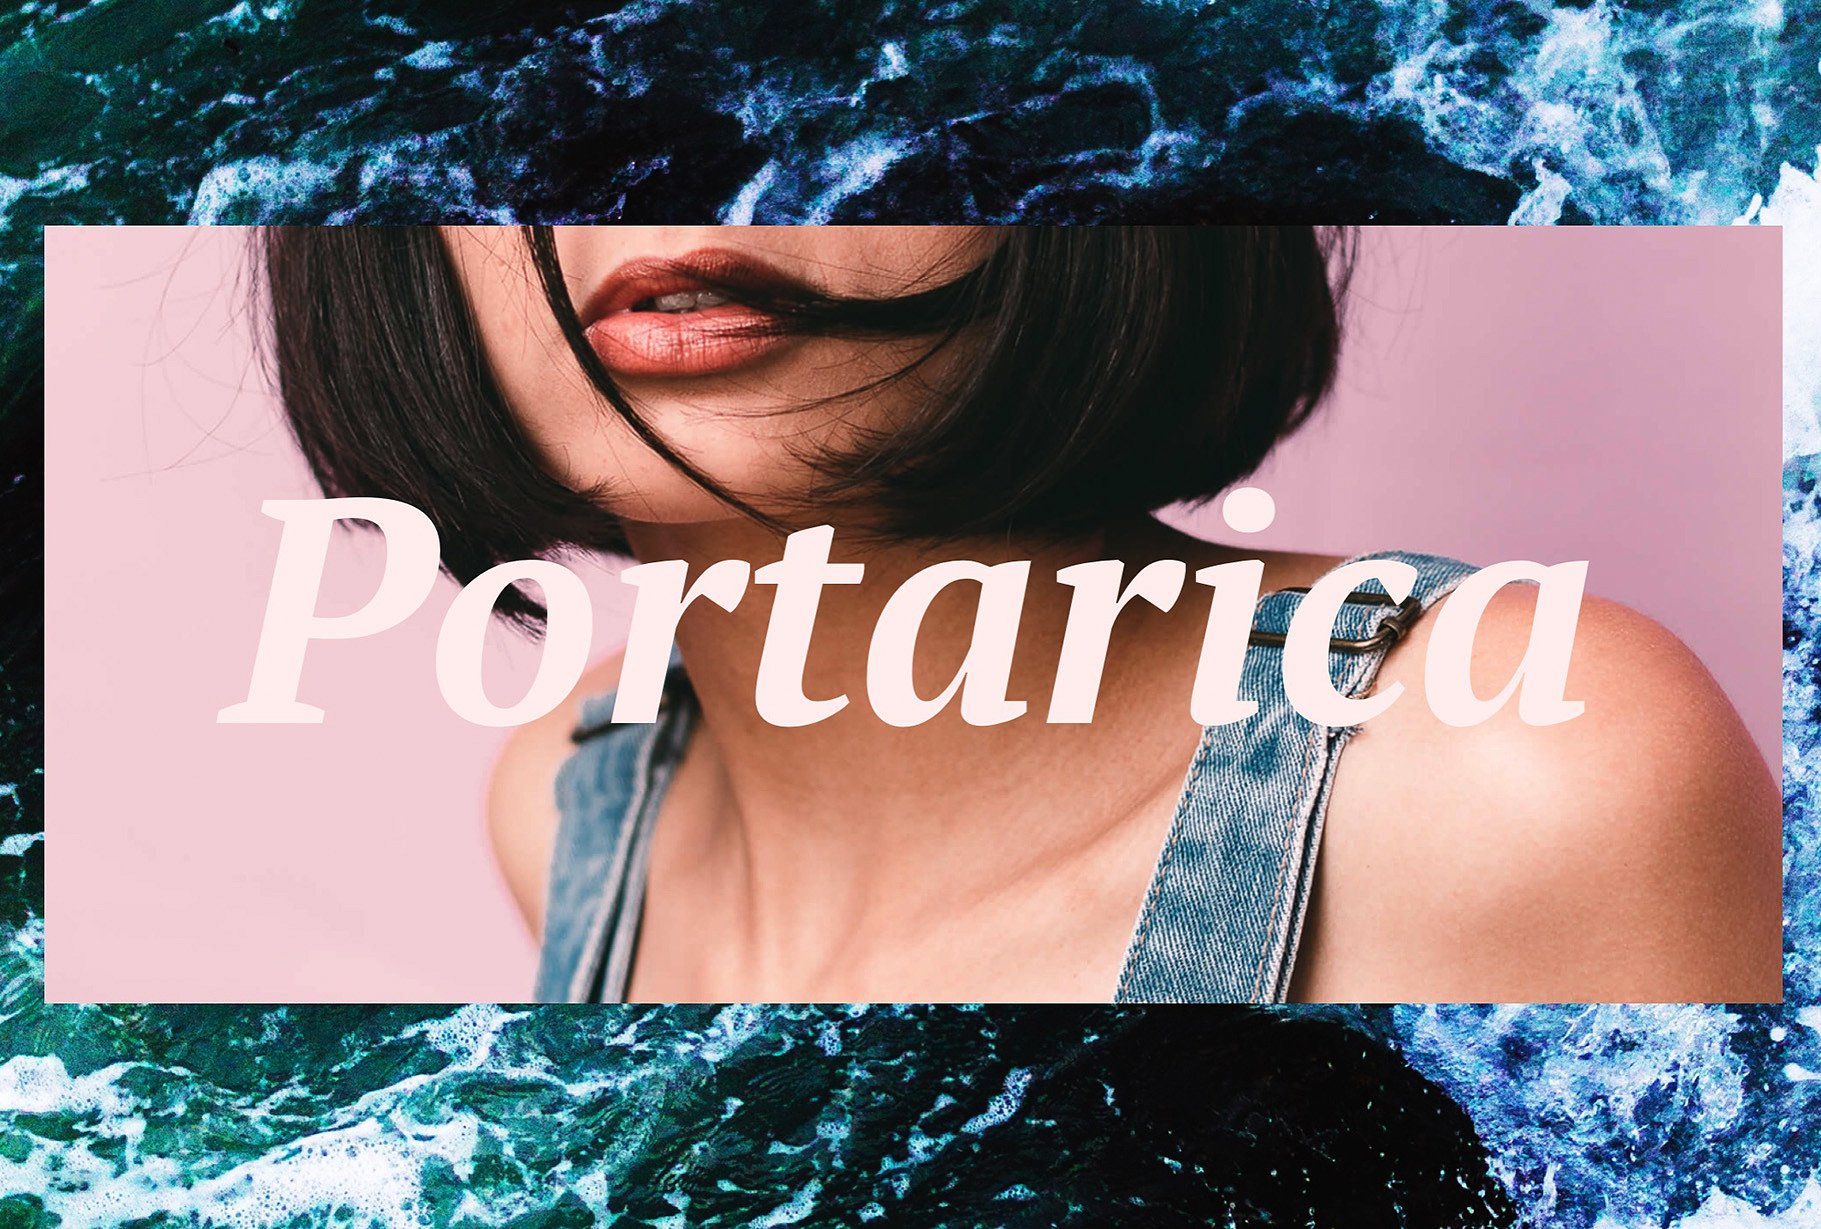 夏季热带主题剪贴簿/拼贴风格PPT幻灯片模板 PORTARICA – Powerpoint Template插图(1)